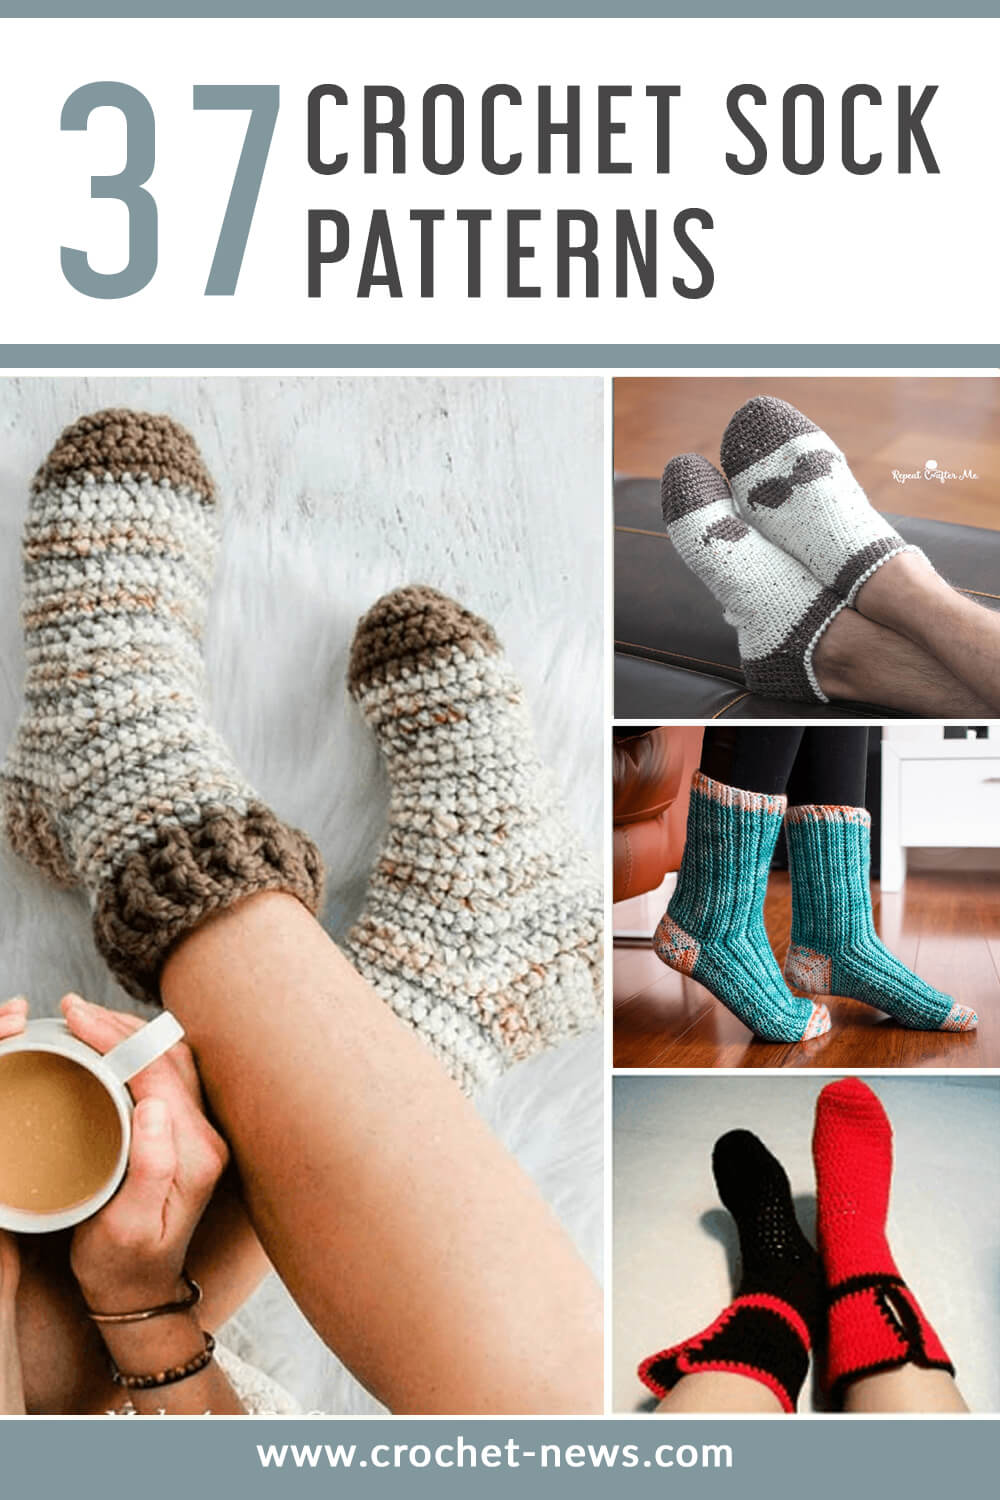 curl Paving Proud 37 Crochet Socks Patterns - Time For New Socks? Crochet News